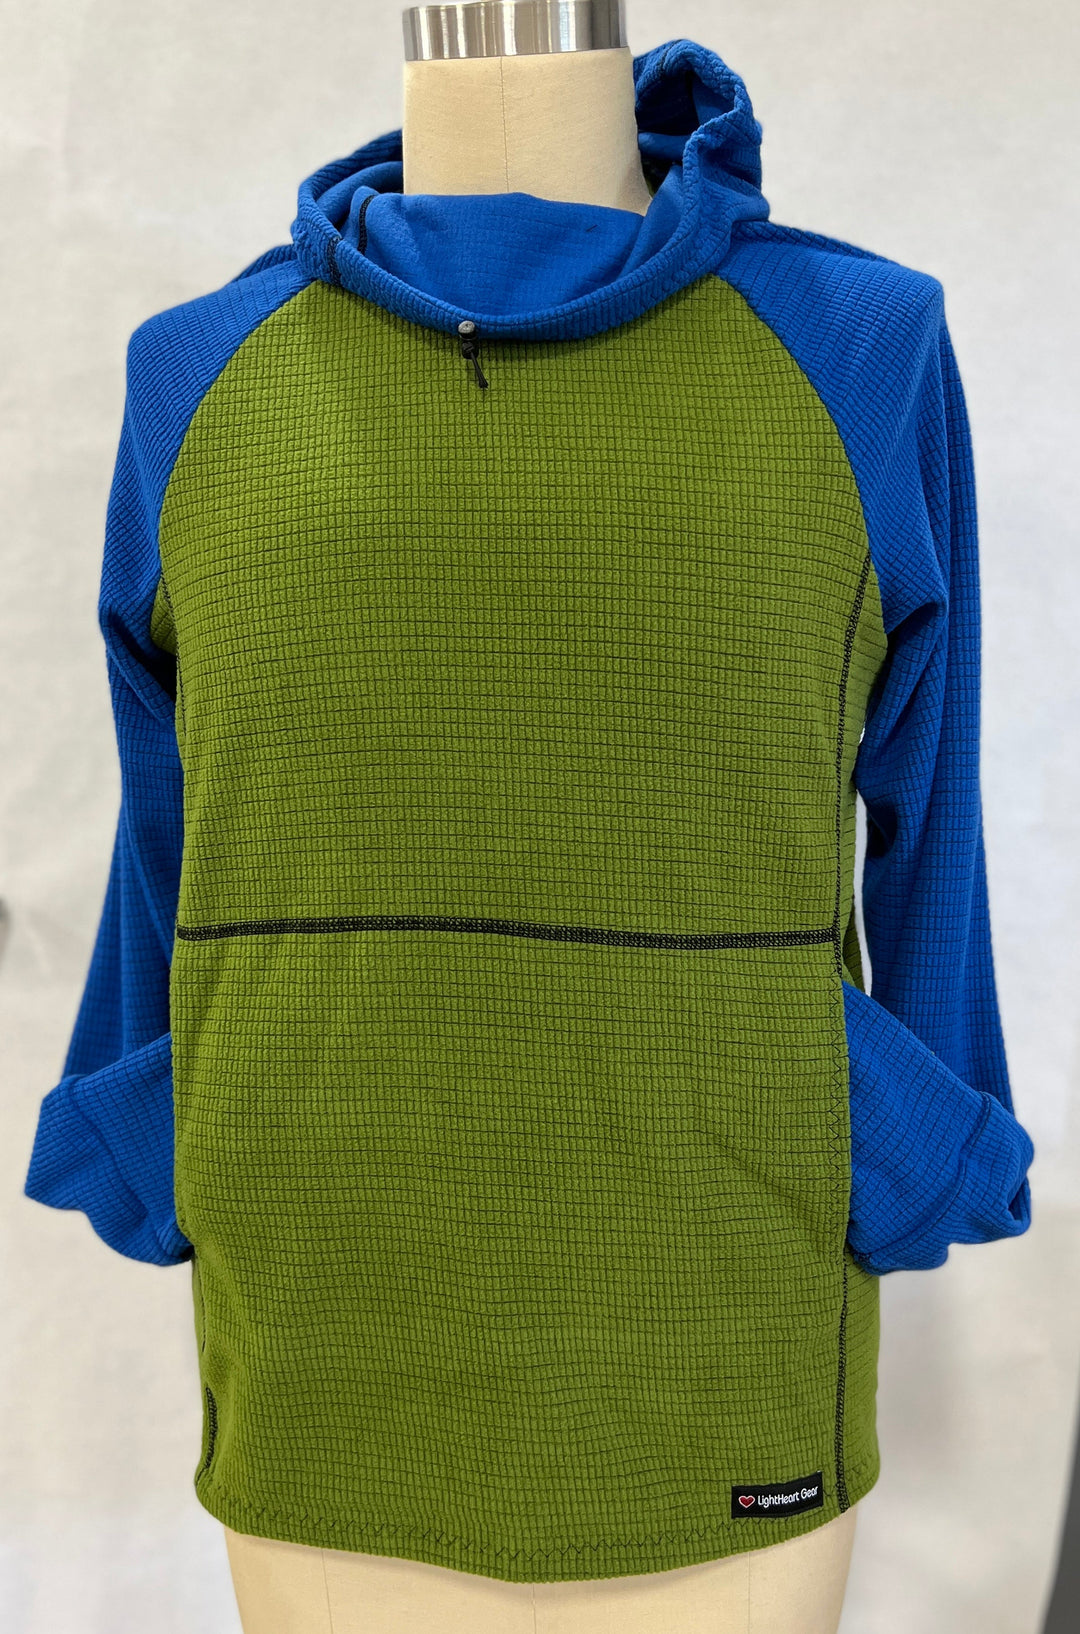 Men's Hoodie - Green w/ Blue sleeves & hood